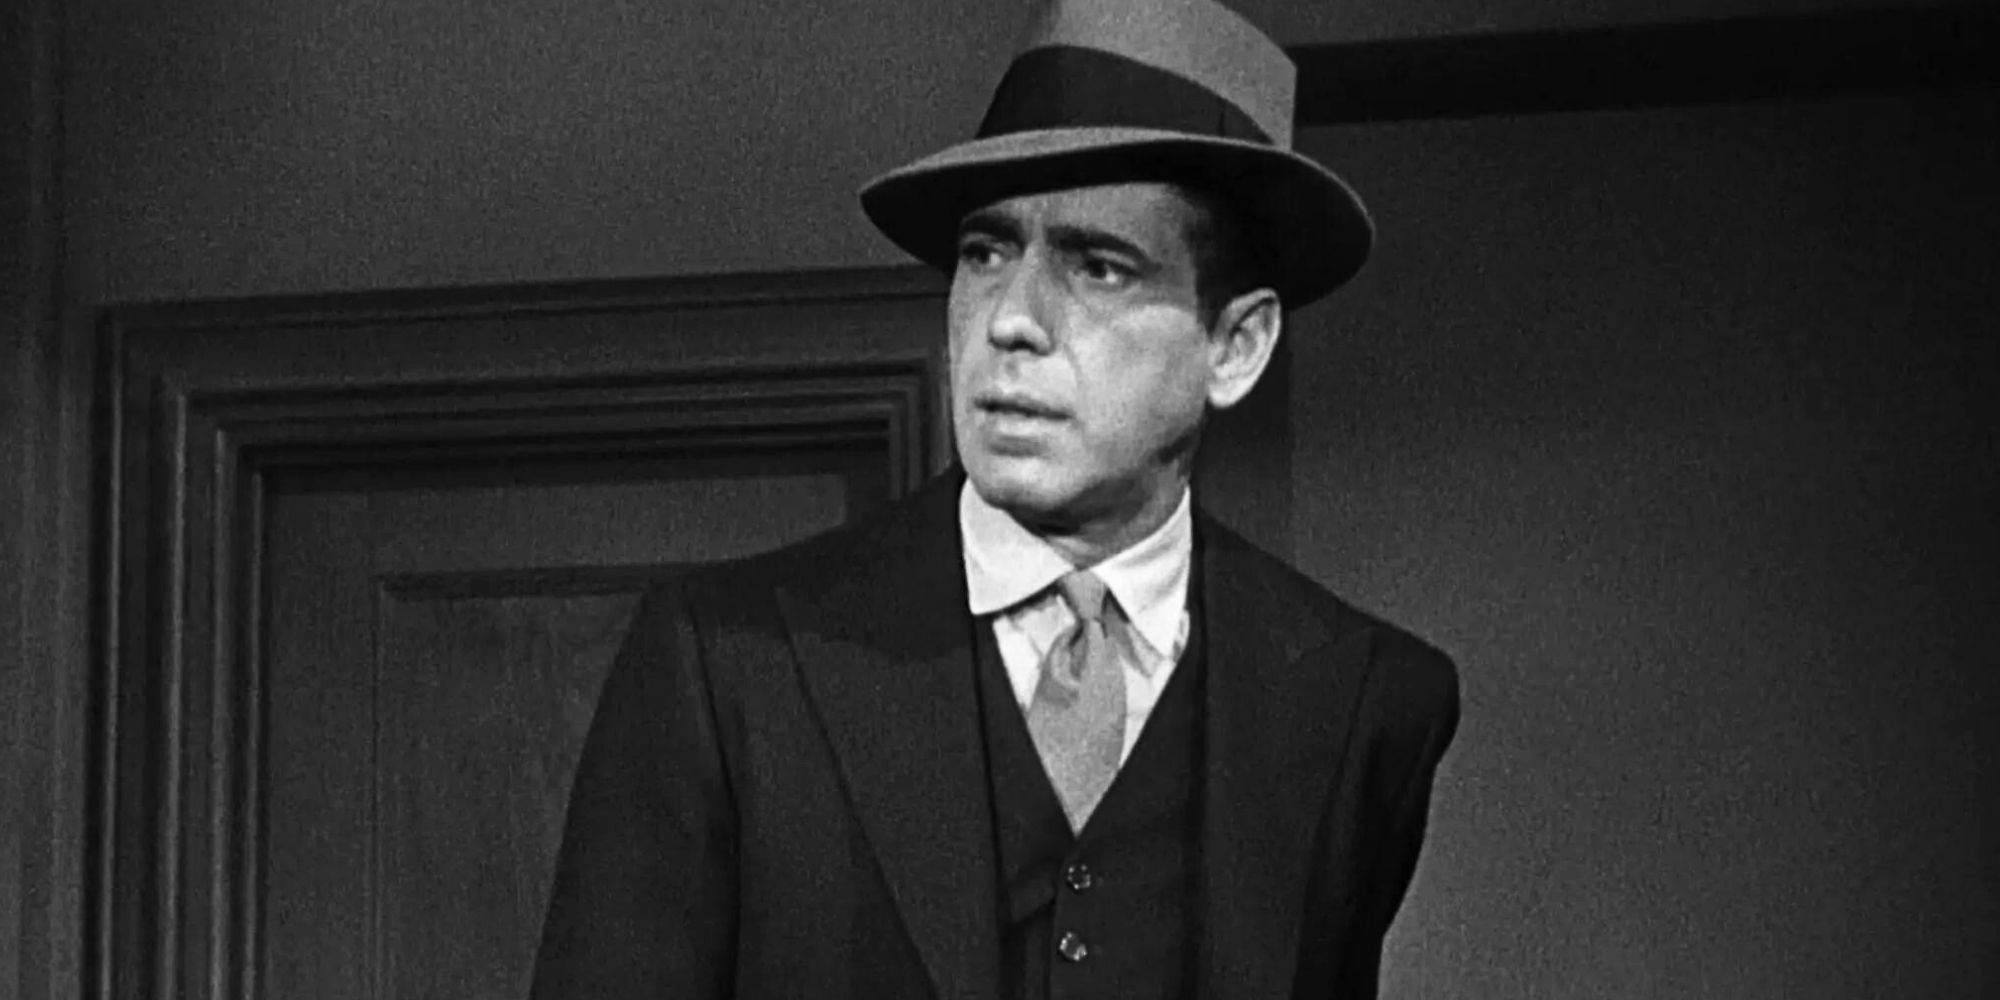 Humphrey Bogart as Sam Spade in The Maltese Falcon (1941)